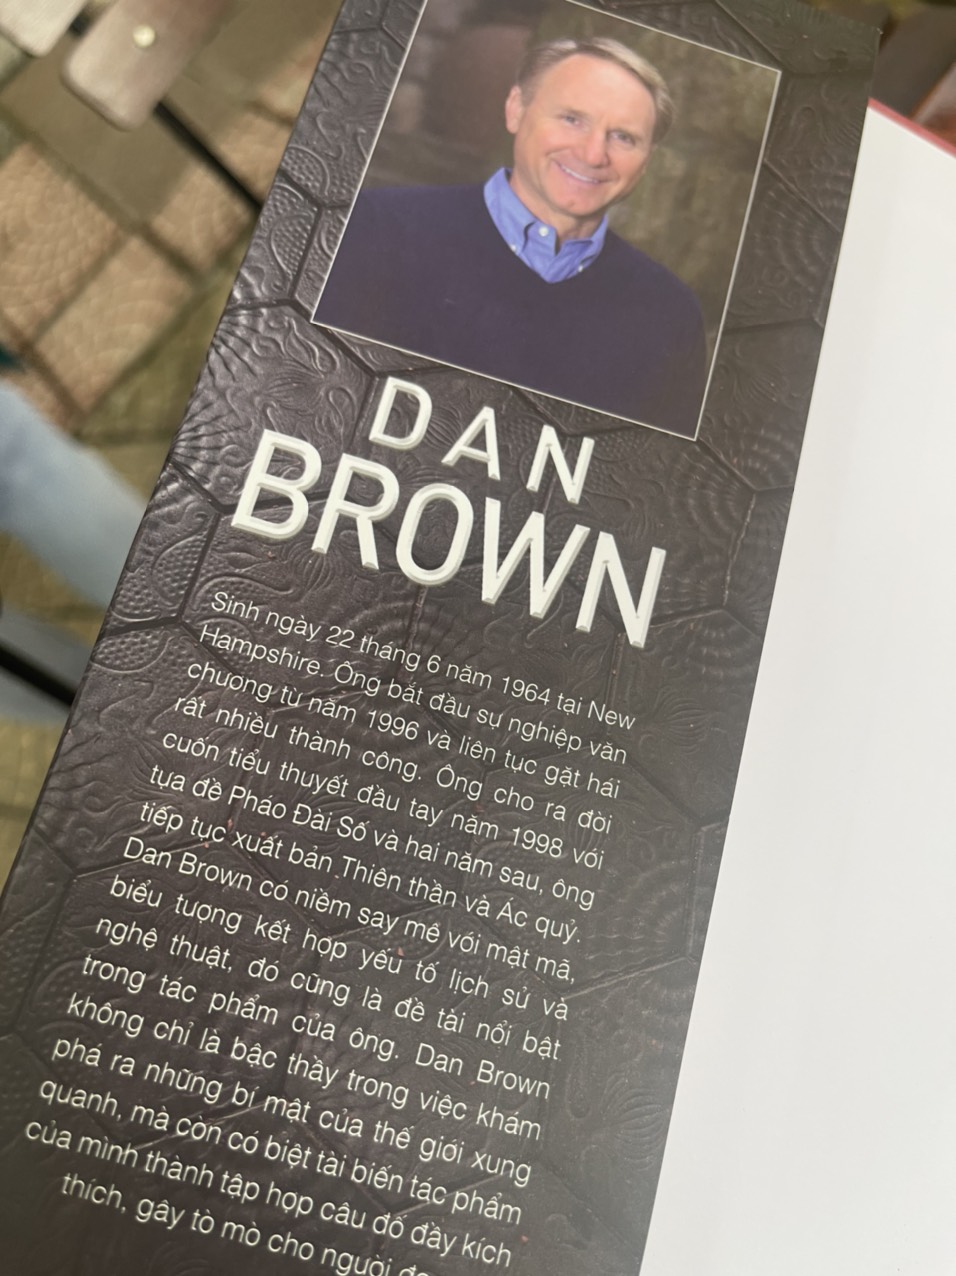 (Bìa cứng – Tái bản bìa mới 2022) NGUỒN CỘI – Dan Brown – bìa cứng – Bách Việt – Nguyễn Xuân Hồng dịch